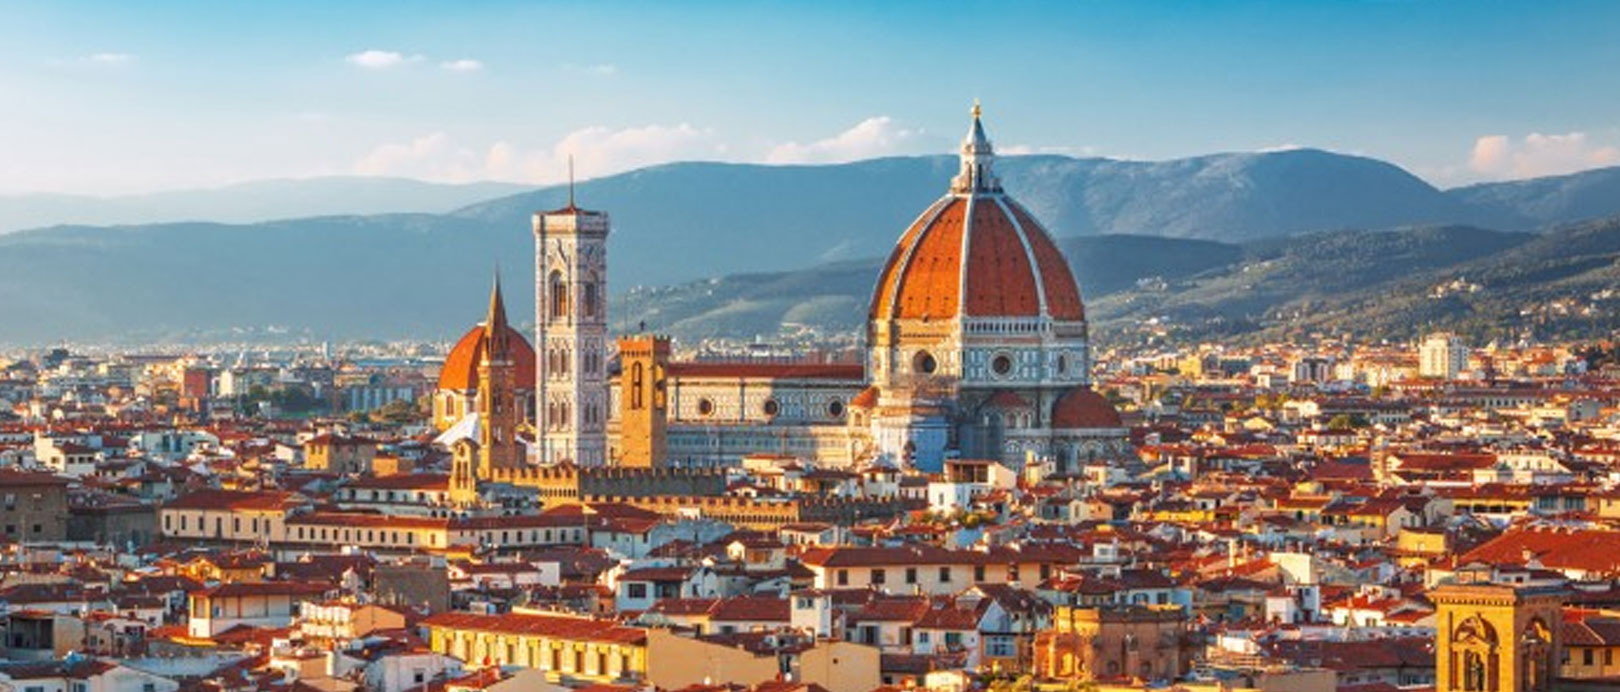 Florencia o Bolonia: cómo designar entre los dos